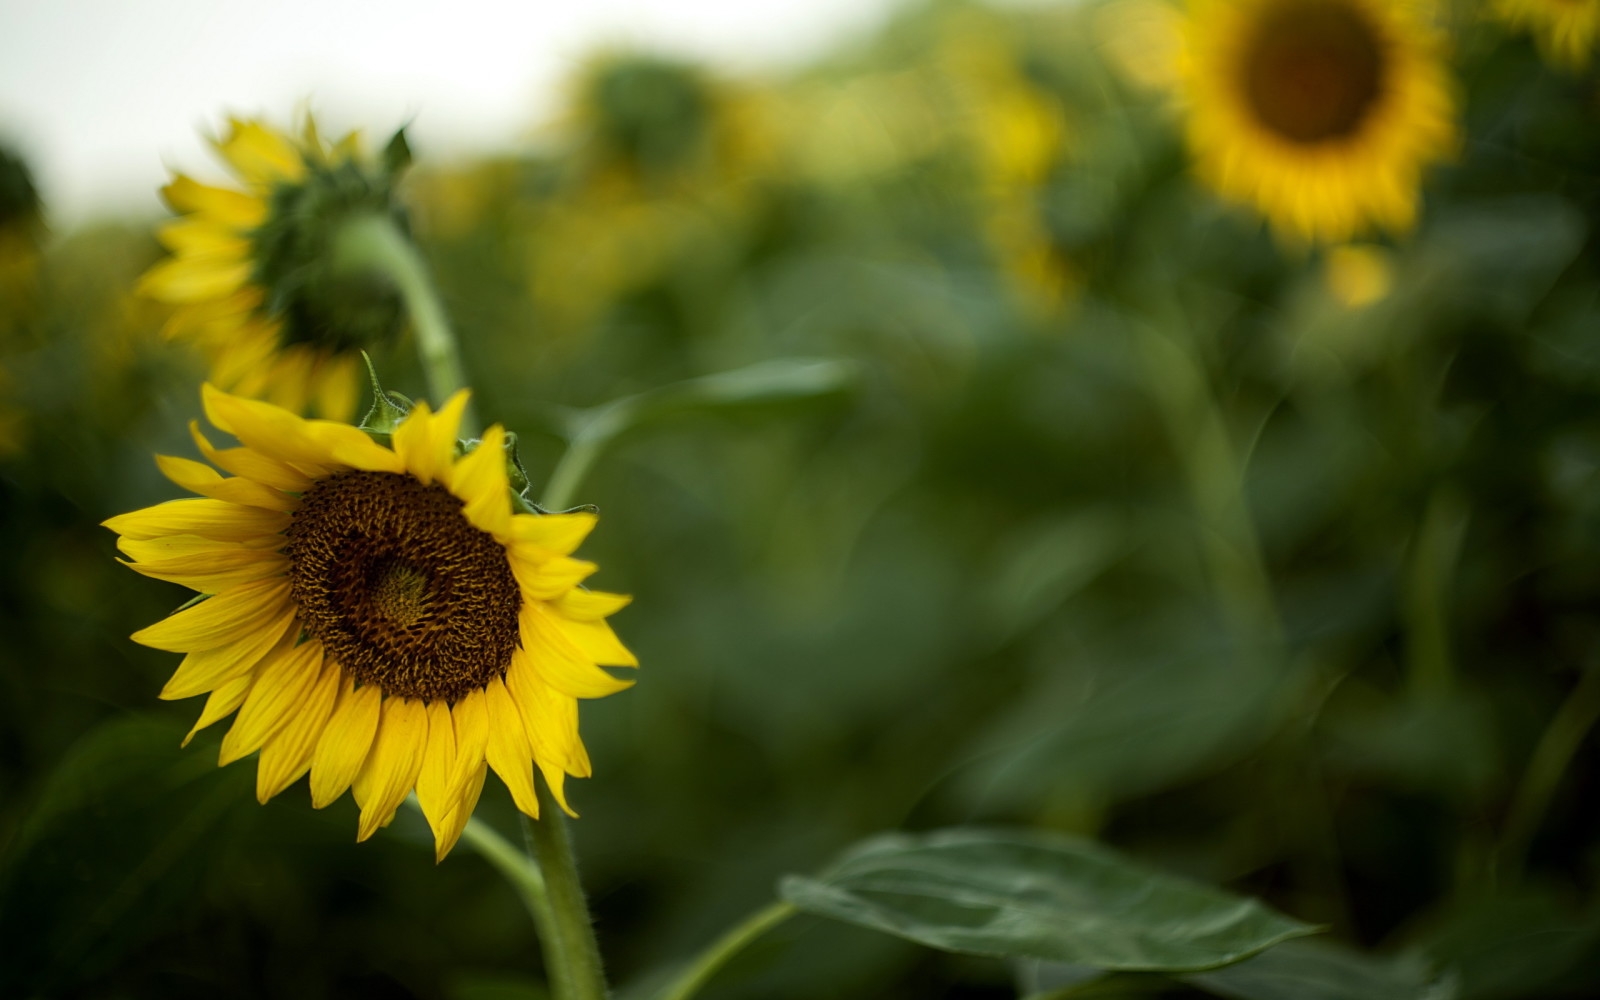 alam, musim panas, bunga matahari